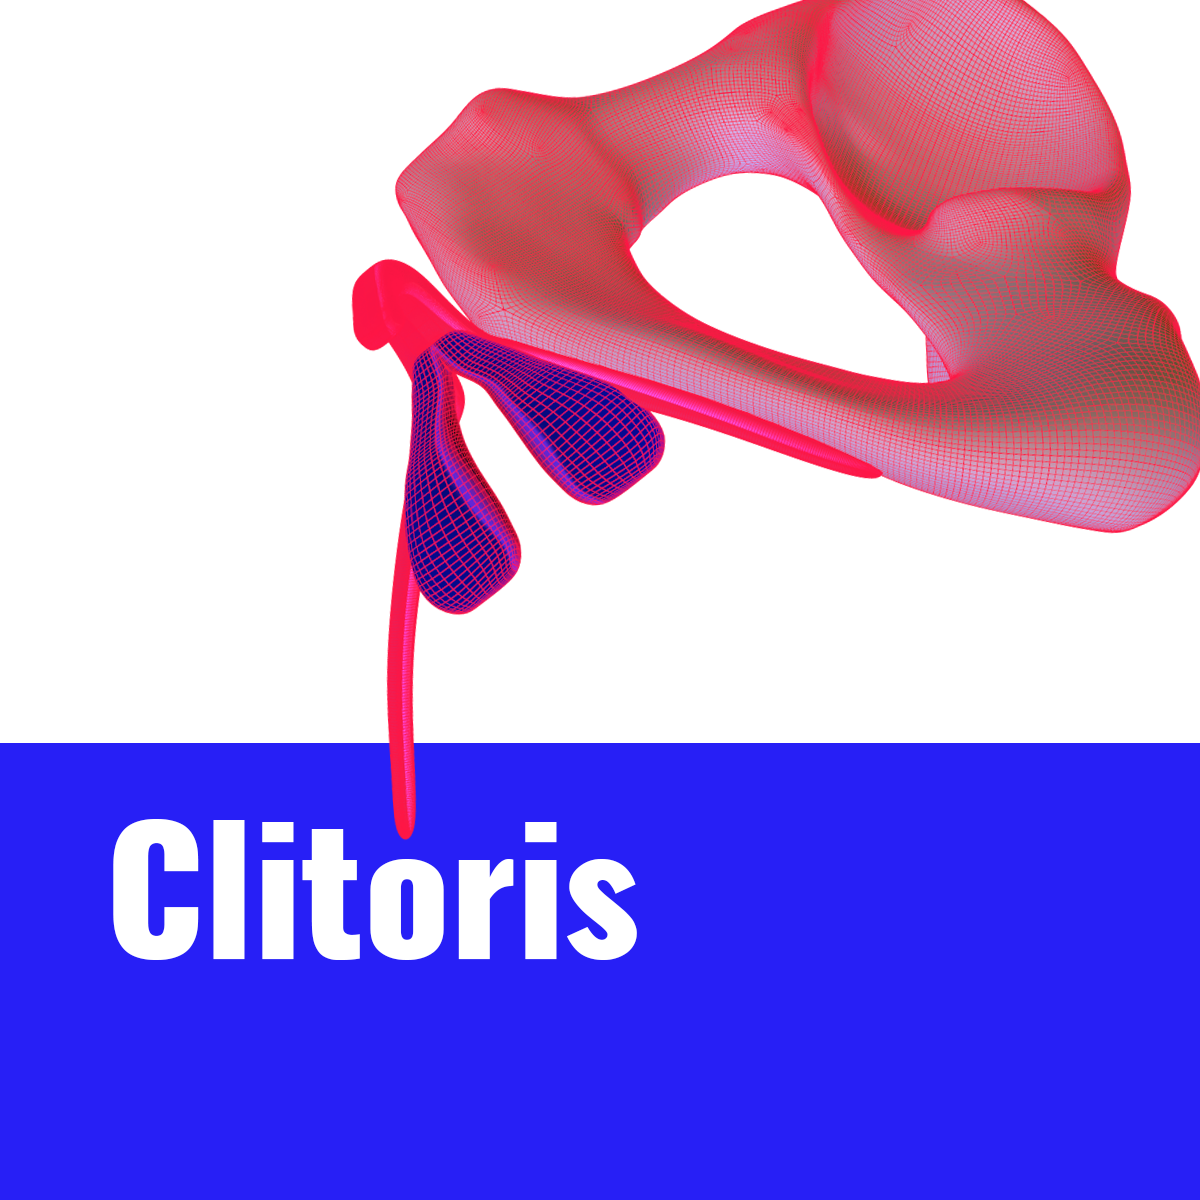 2 Clitoris thumbnail V2.png